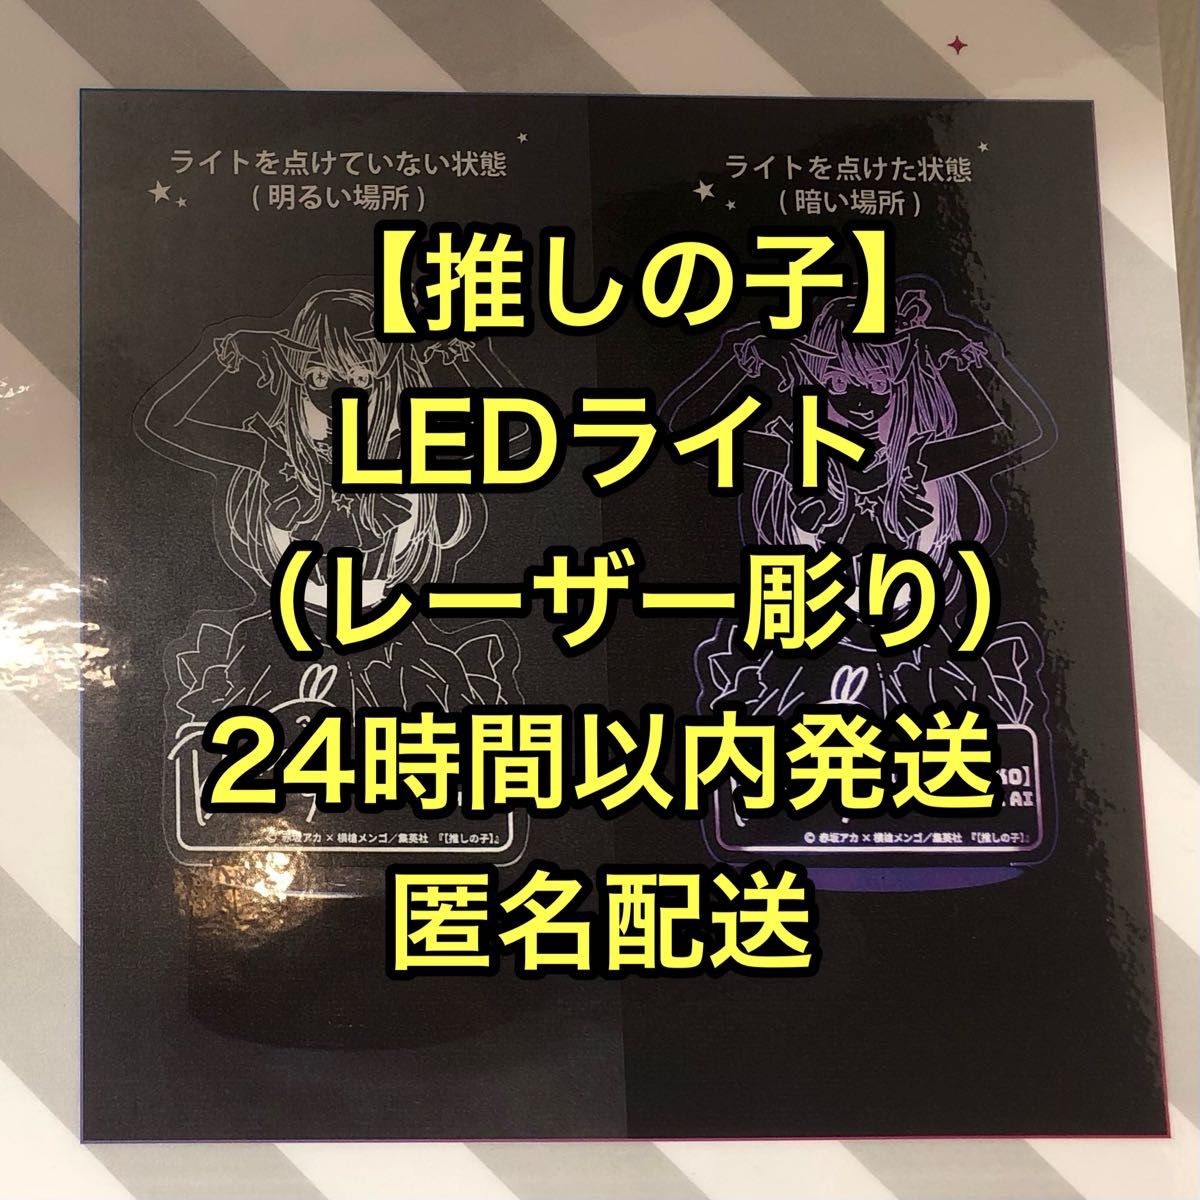 赤坂アカの世界展 推しの子 星野アイ LEDライト(レーザー彫り) 東京